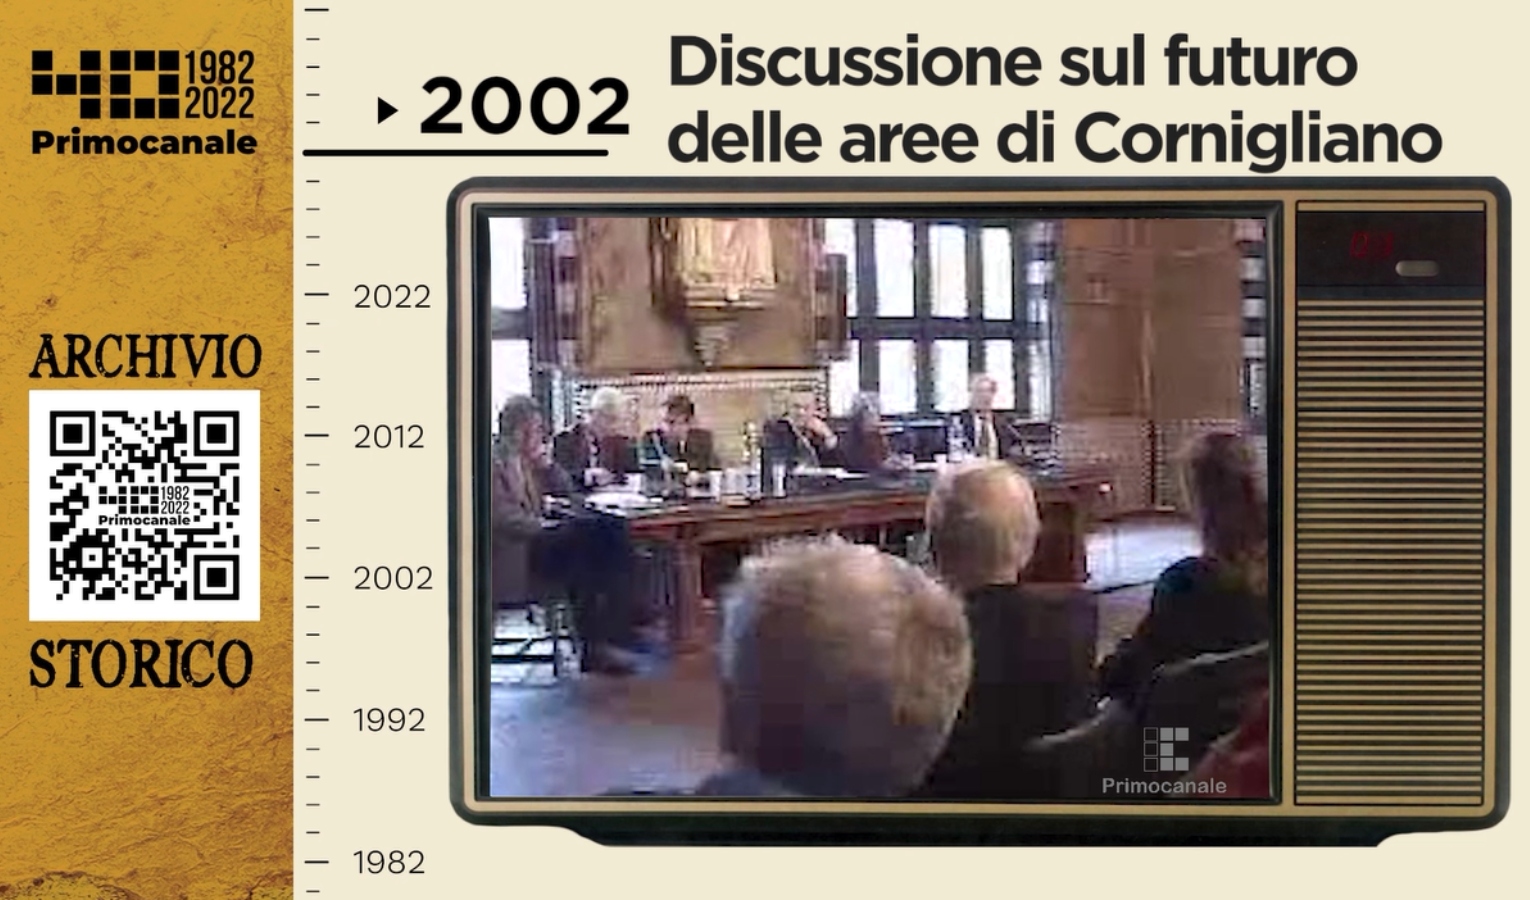 Dall'archivio storico di Primocanale: 2002 - Discussione sul futuro delle aree di Cornigliano